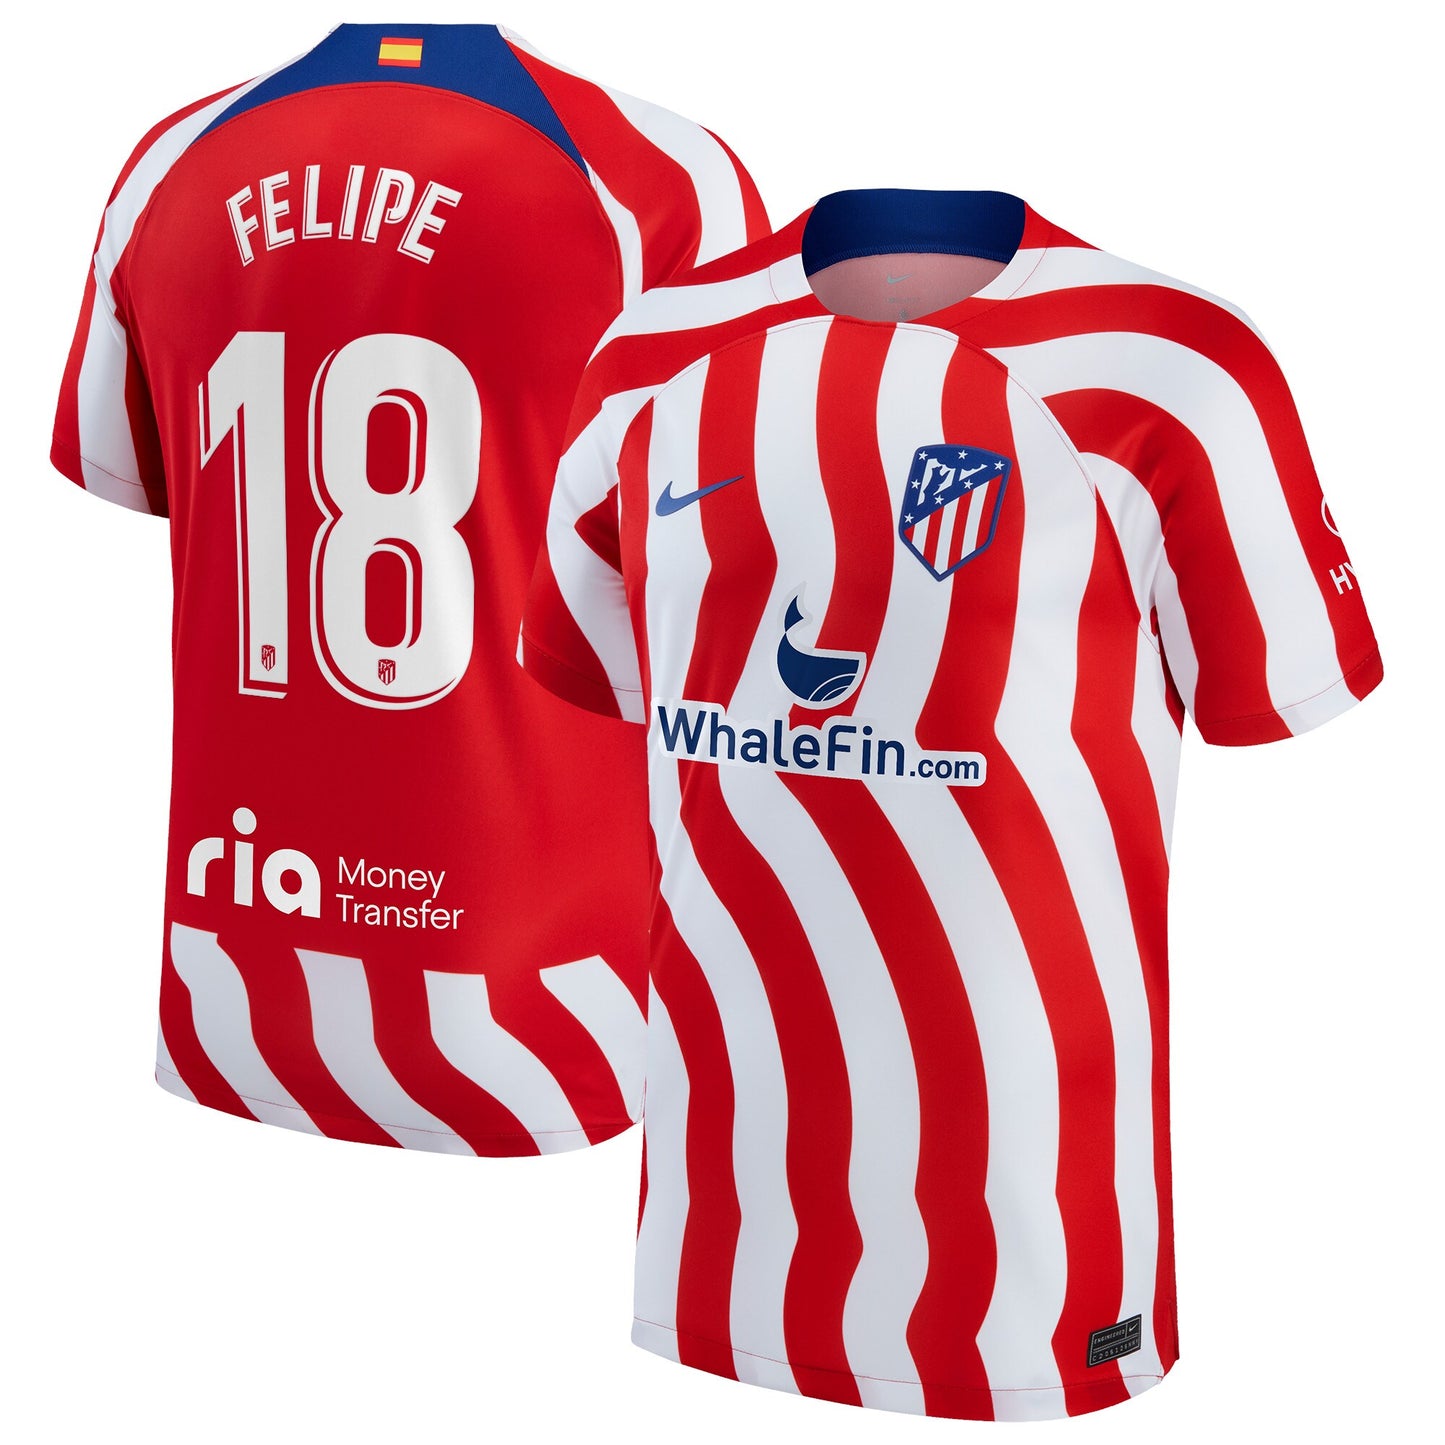 Felipe Atletico Madrid 18 Jersey